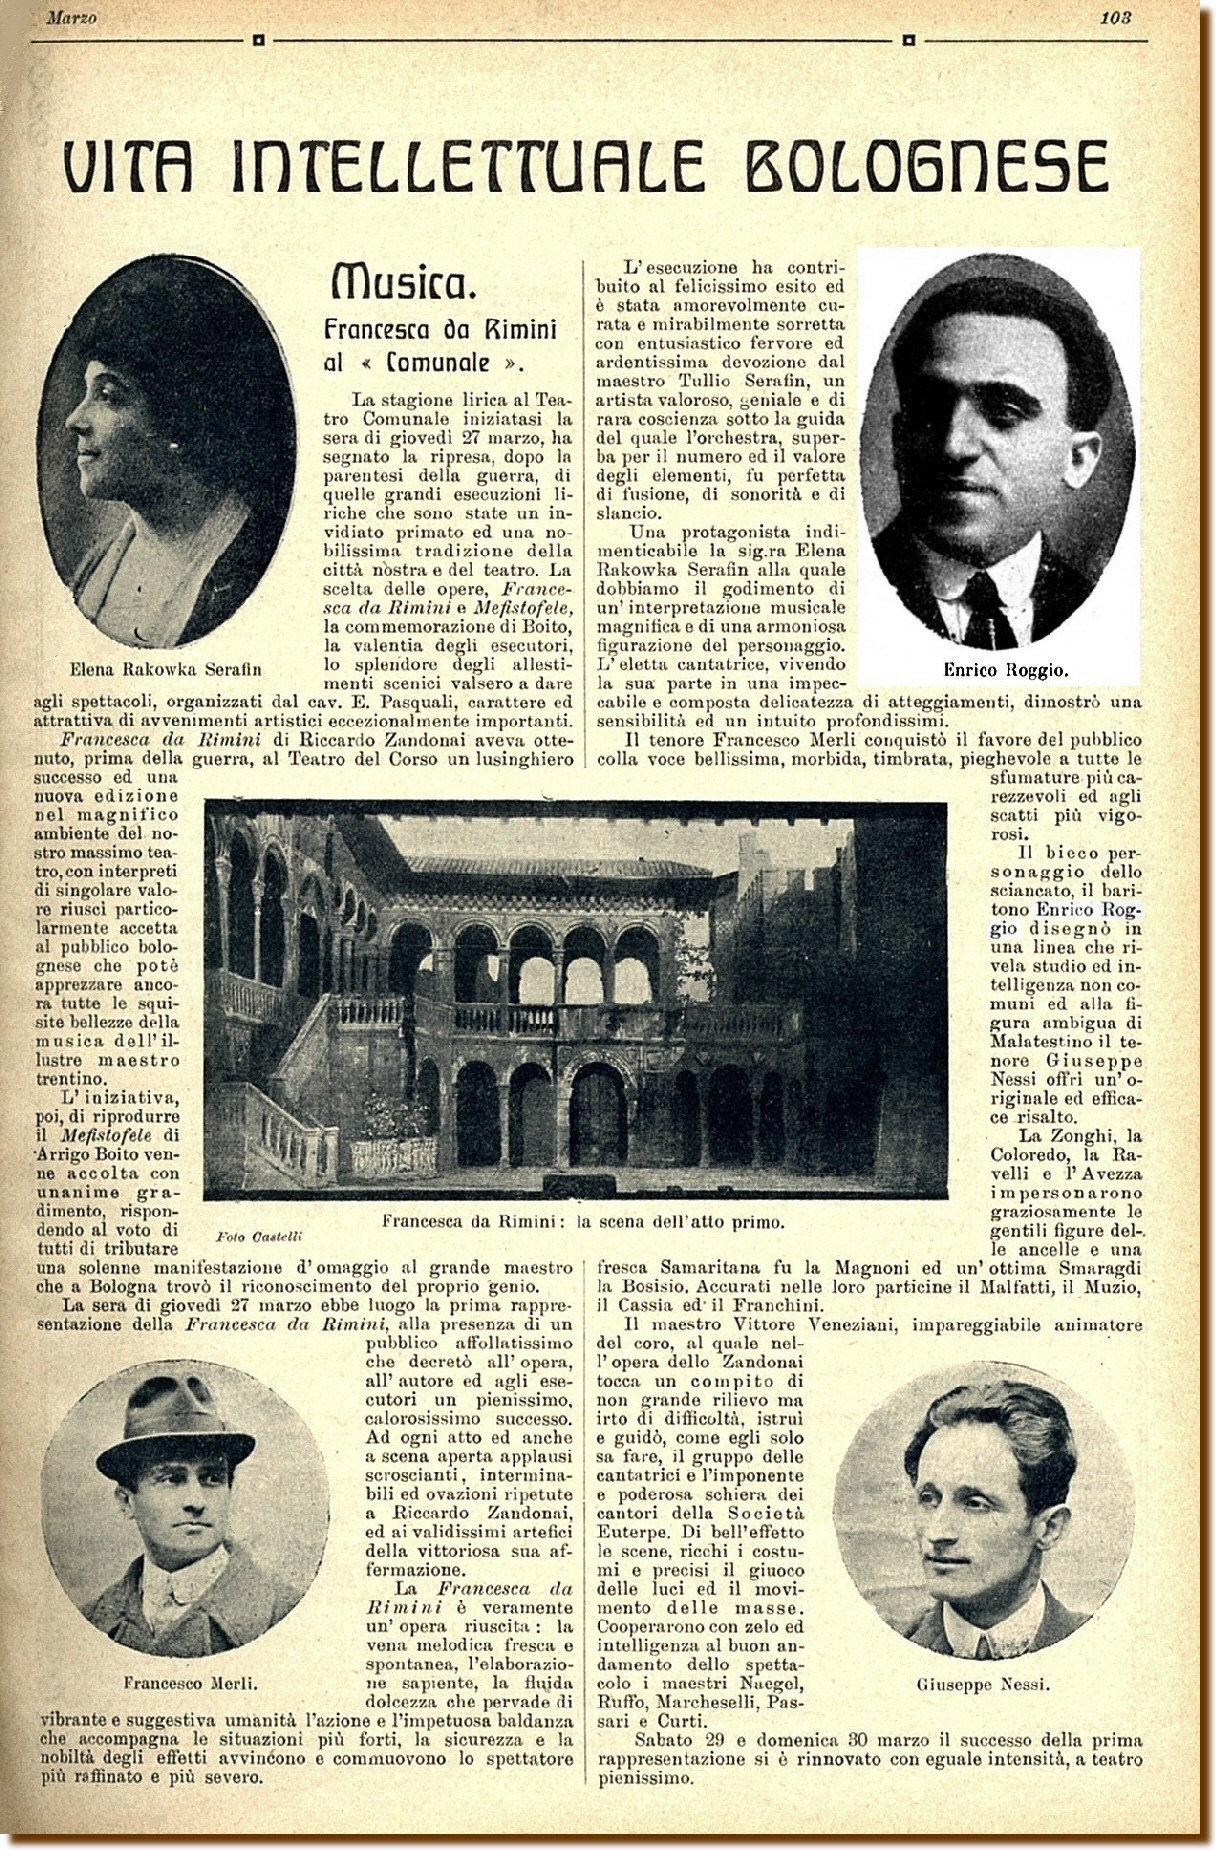 Bologna articolo tratto da "La vita Cittadina" marzo 1919 